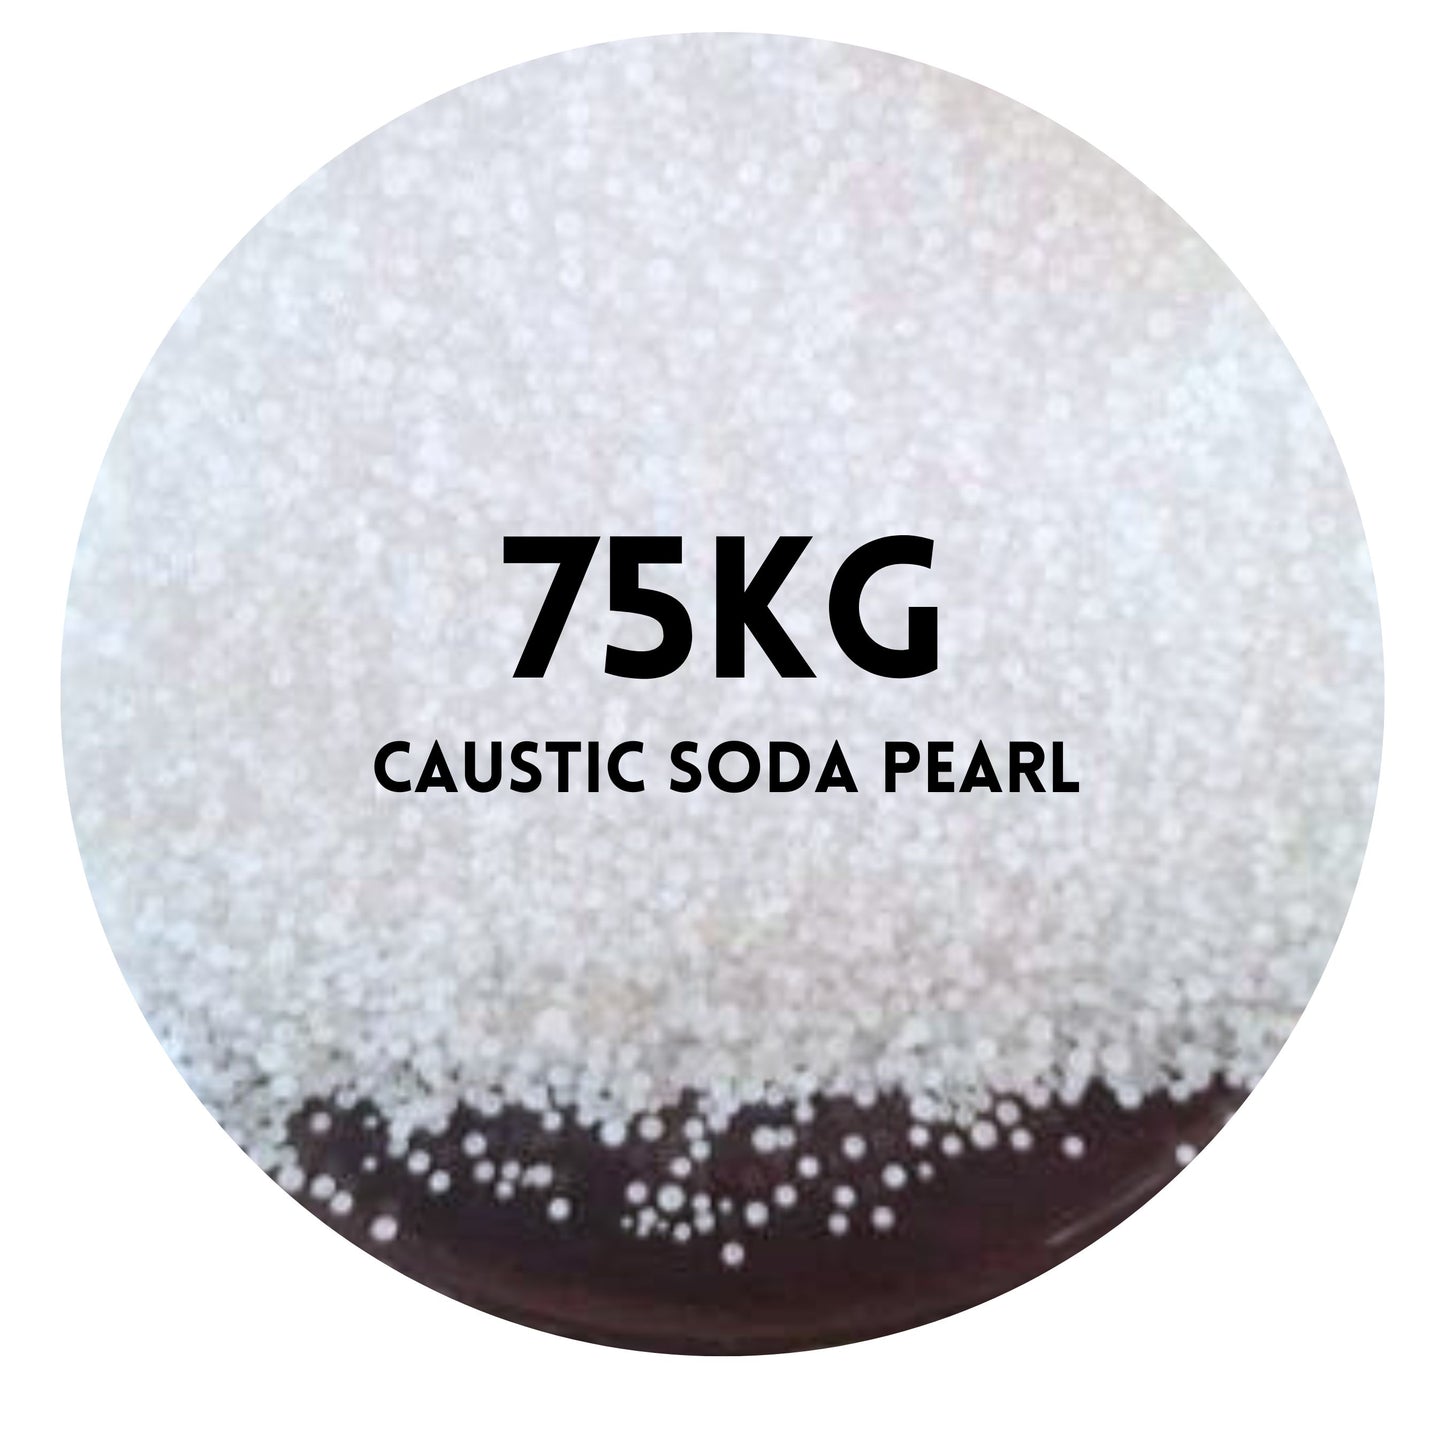 Caustic Soda Pearl - 75kg